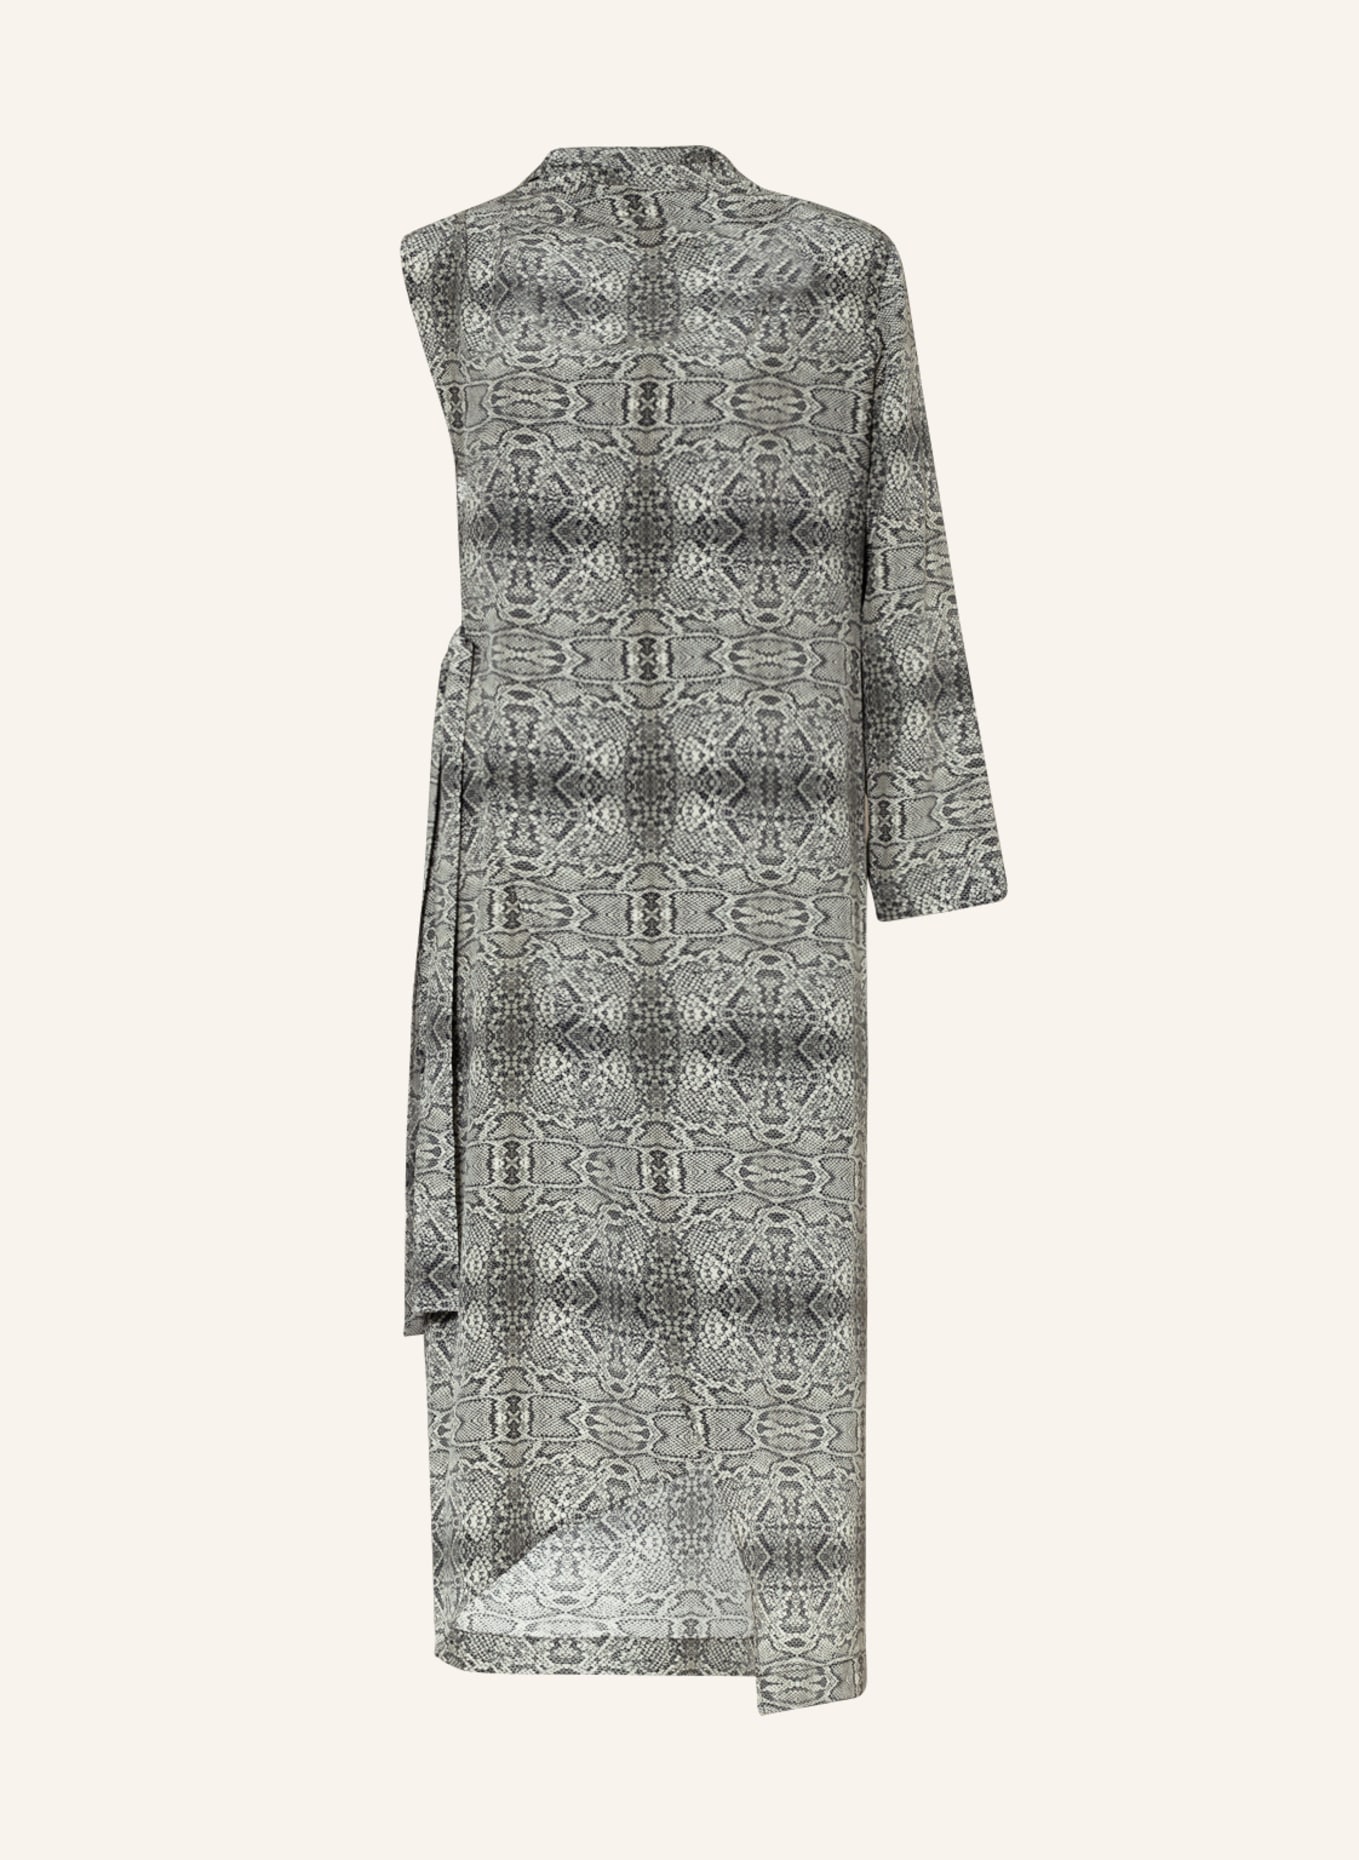 ENVELOPE 1976 One-shoulder dress made of silk, Color: GRAY/ LIGHT GRAY (Image 1)